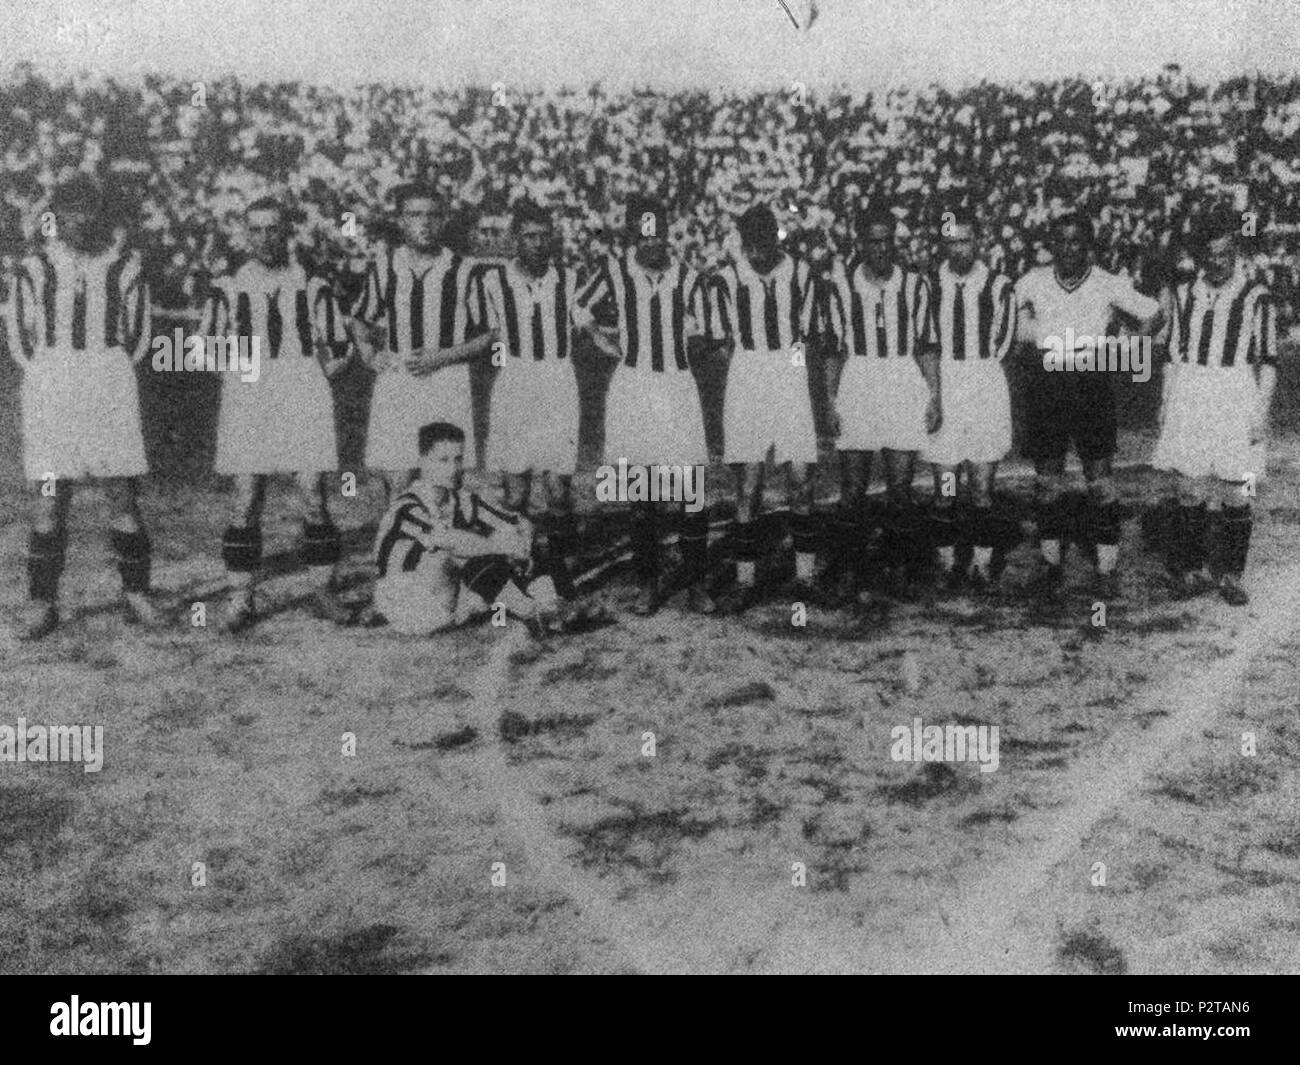 . Italiano: Una formazione della Juventus nella stagione 1928-29. Da sinistra, in piedi: C. Bigatto (I) (capitano), O. Barale, G. Borgo (I), E. Borgo (II), G. Galluzzi, A. Vojak (I), F. Munerati, V. Rosetta, G. Combi, L. Cevenini (III); accosciato: M. Ferrero. between 1928 and 1929. Unknown 30 Foot-Ball Club Juventus 1928-29 Stock Photo